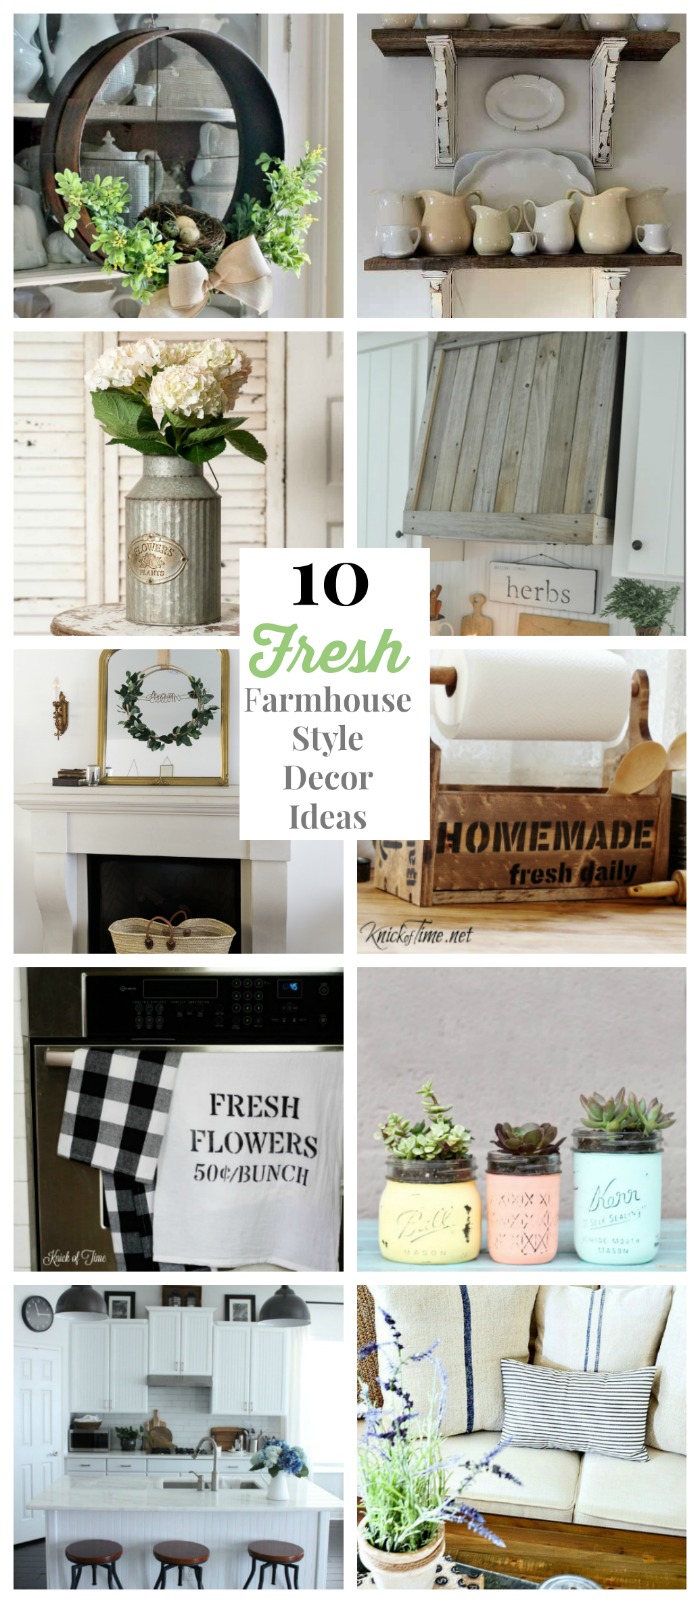 10 Fresh Farmhouse Style Decor Ideas | www.knickoftime.net #farmhousestyle #barnwood #DIY#totes #pillows #nosew #farmhousekitchen #metaldecor #masonjars #walldecor #wreathes